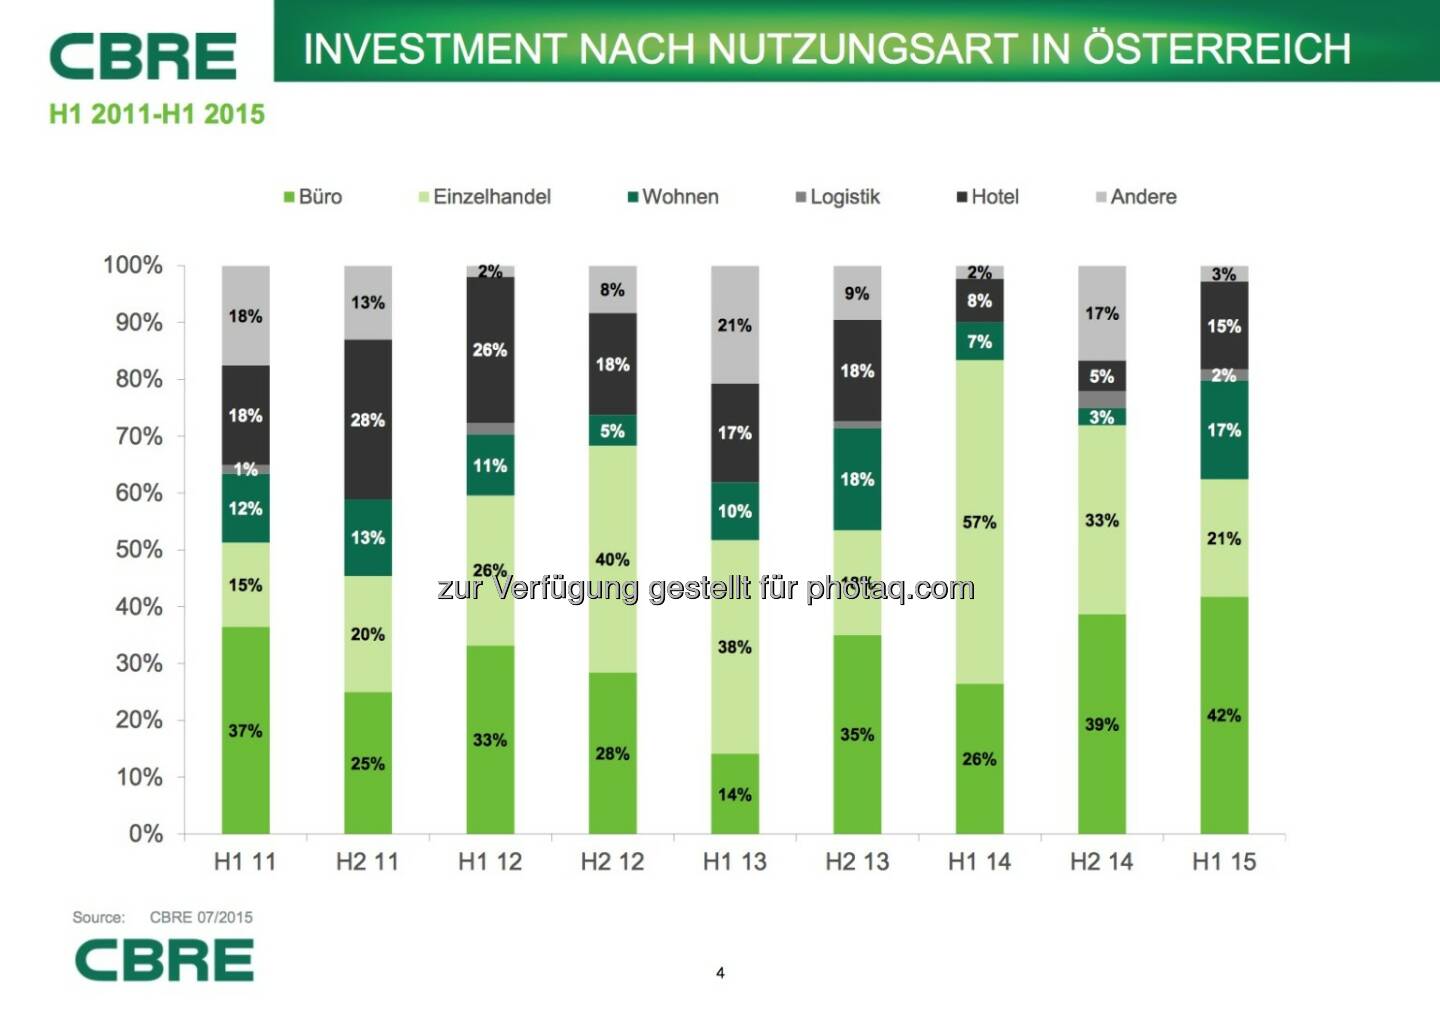 Cbre: Investment nach Nutzungsart in Österreich